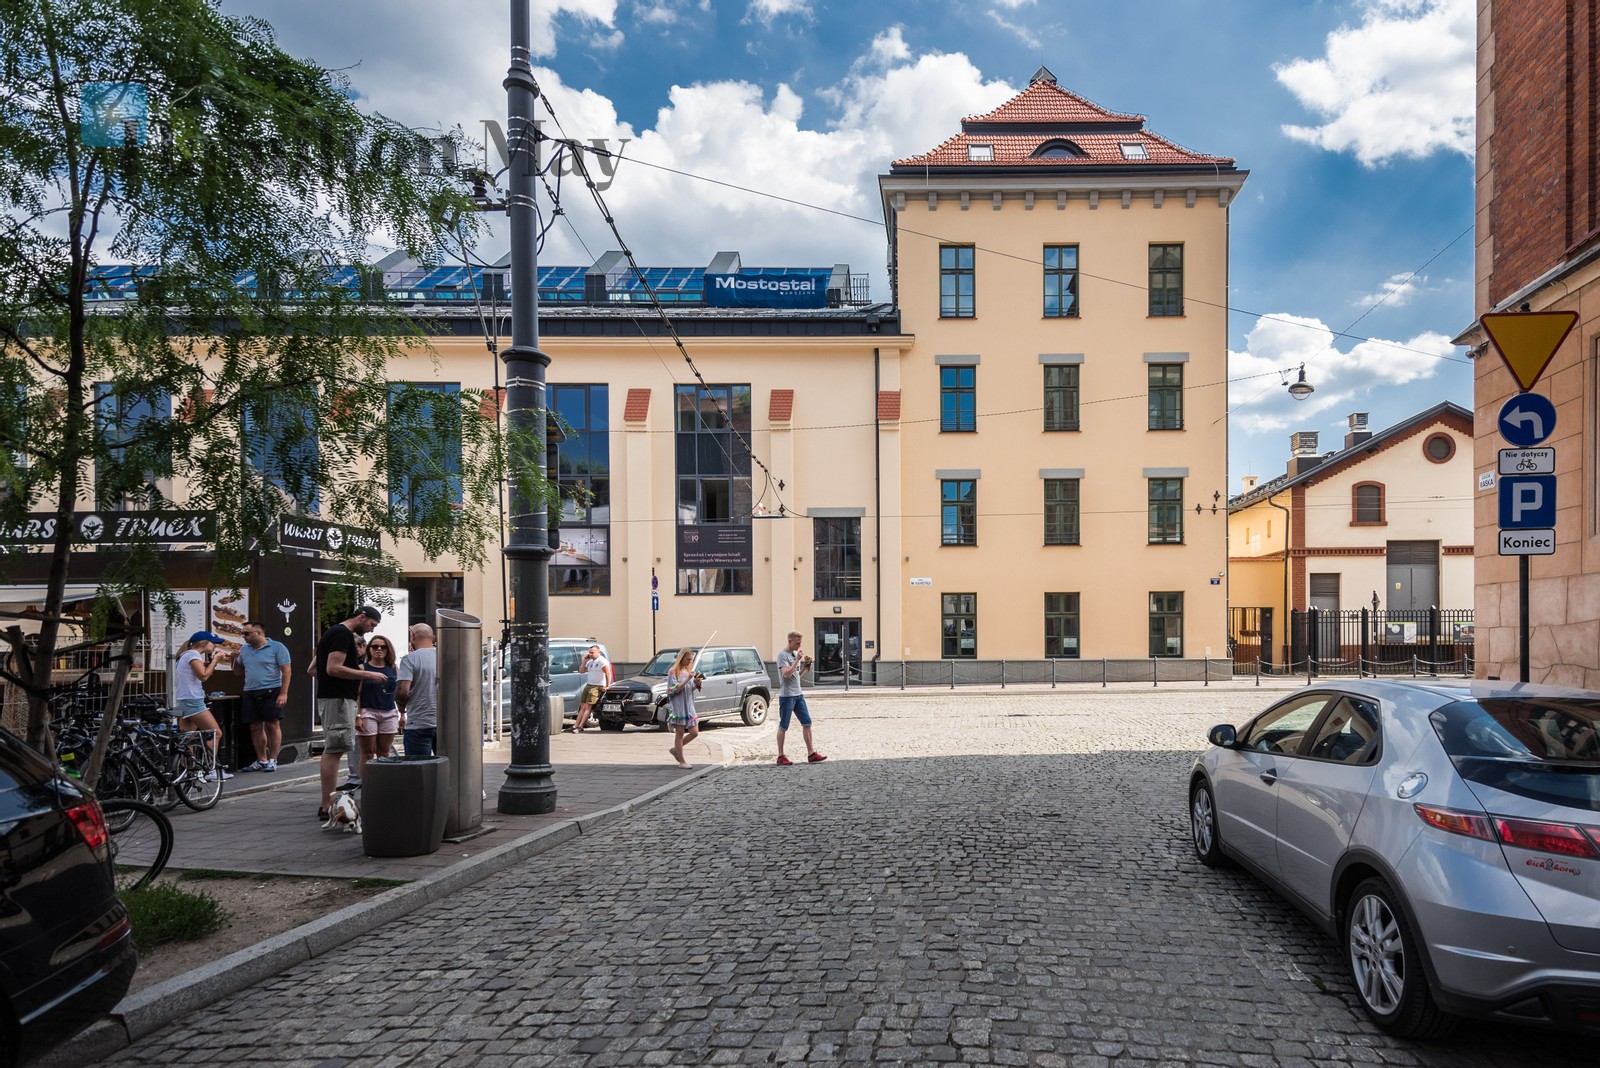 Street: św. Wawrzyńca Region: Stare Miasto Subregion: Kazimierz Level: 6 Status: existing Number of units: 99 Sale price from: 624000PLN Avg. sales price/m2: 14000PLN Rental price from: 2800PLN Avg. rental price/m2: 65PLN - slider